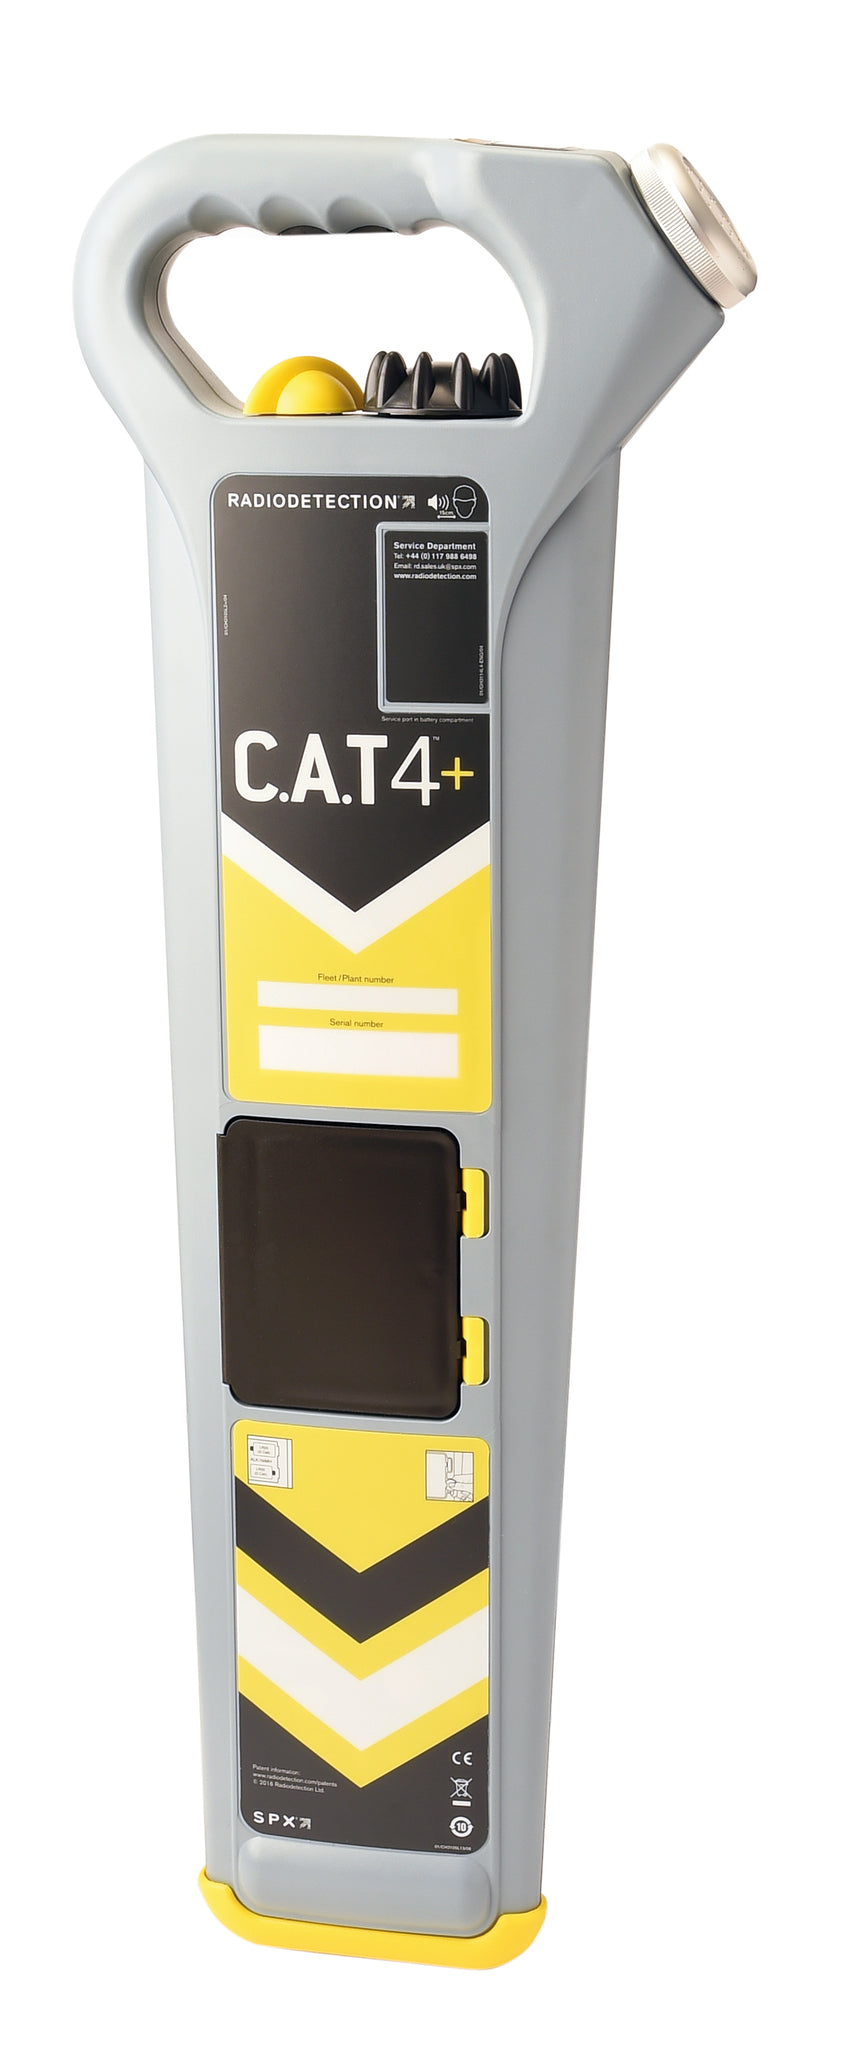 Radiodetection CAT4+